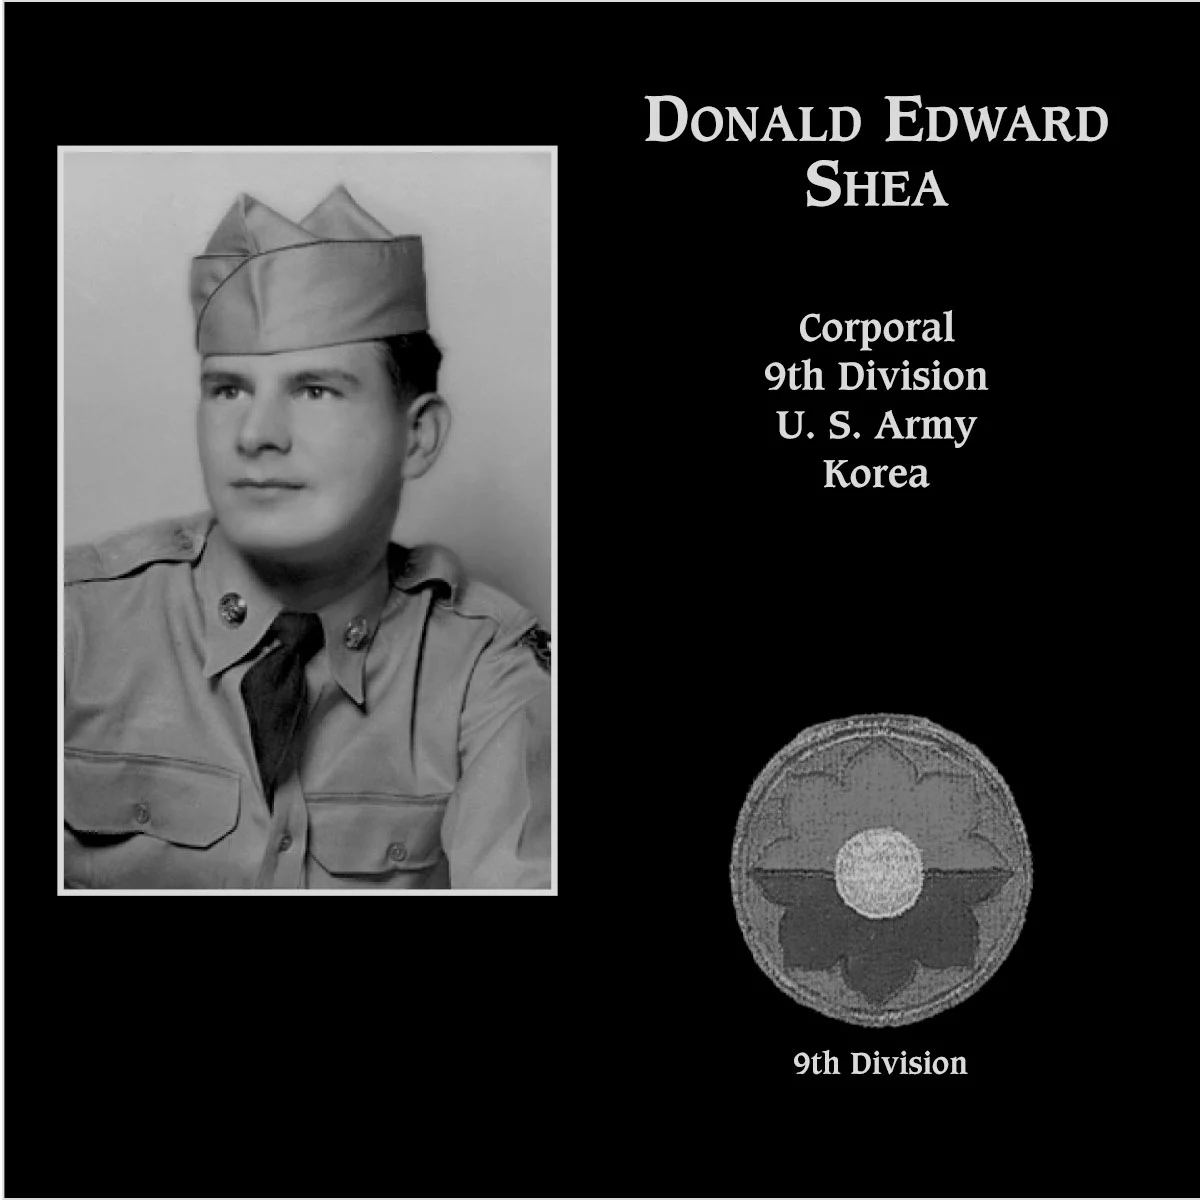 Donald Edward Shea